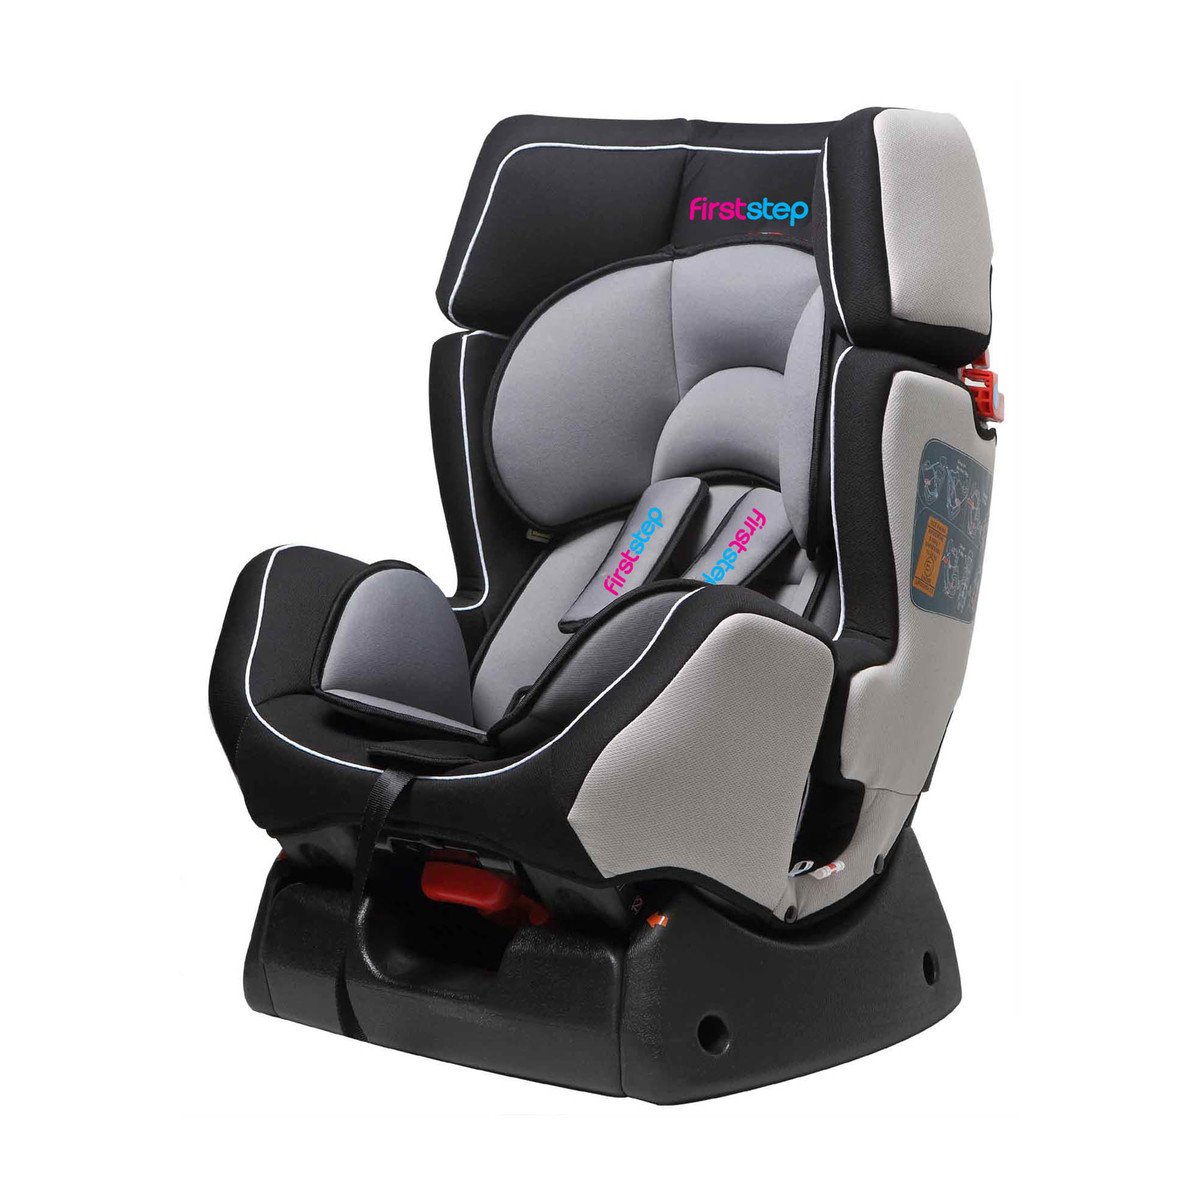 First Step Baby Car Seat GEL07 Grey